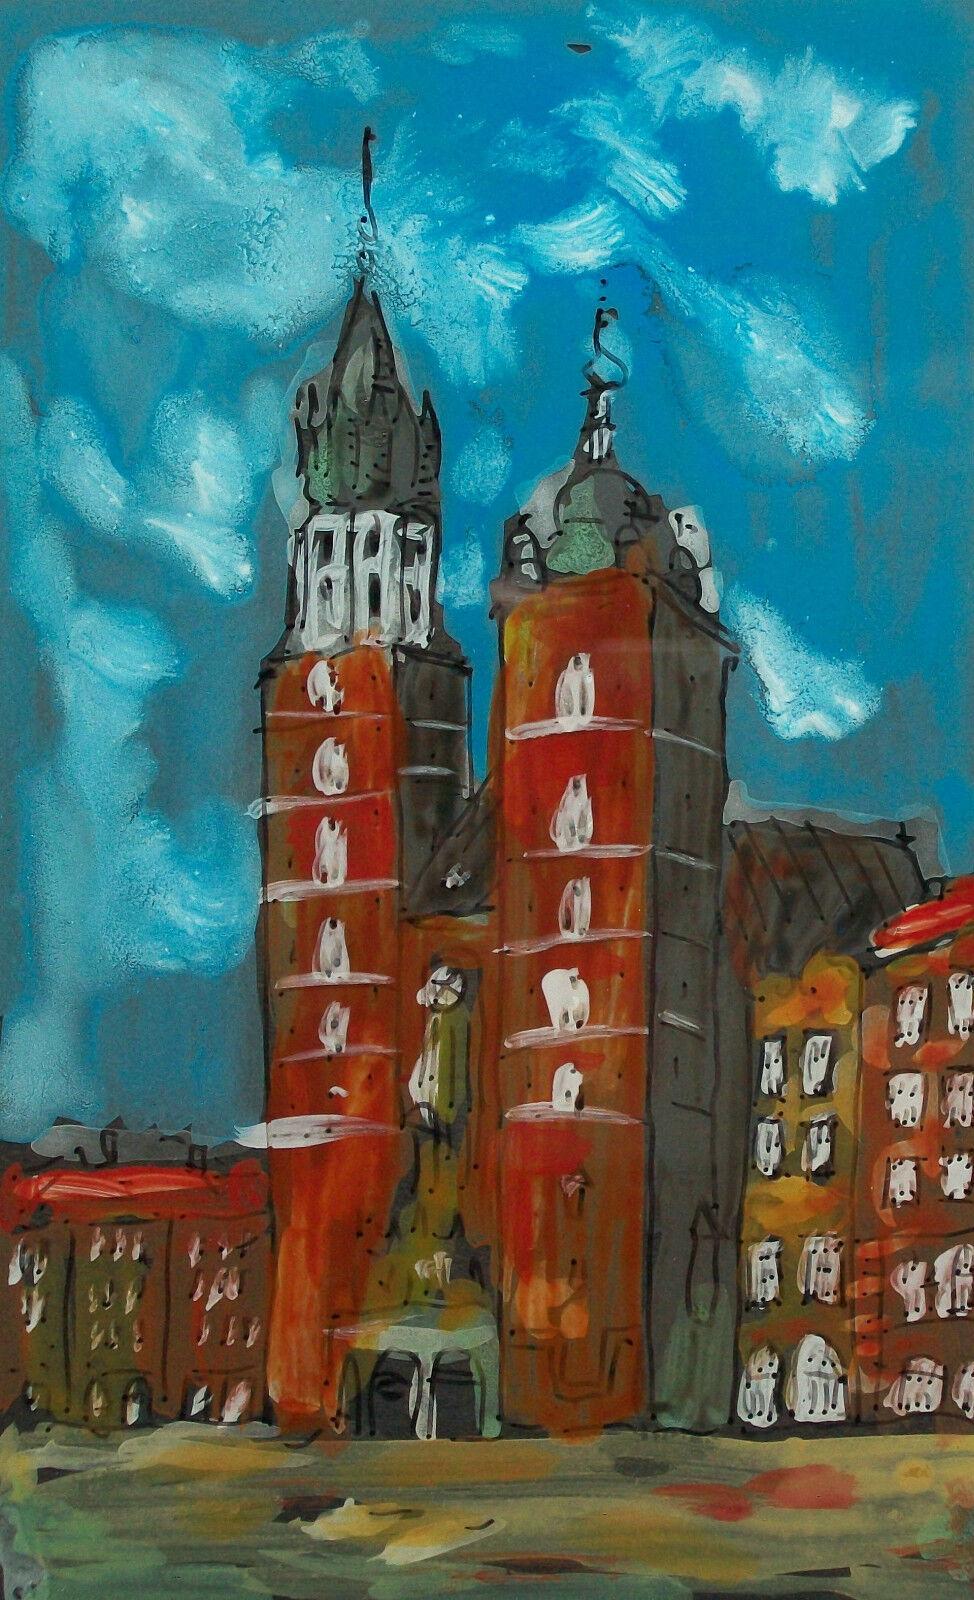 ROMAN WIELOCH - 'Kraków' - Zeitgenössische Hinterglasmalerei - Ansicht der St. Mary's Church - wahrscheinlich für den touristischen Markt - rückseitig mit schwarzem Papier montiert - an den Außenkanten mit Klebeband versiegelt - Schutzumschlag auf